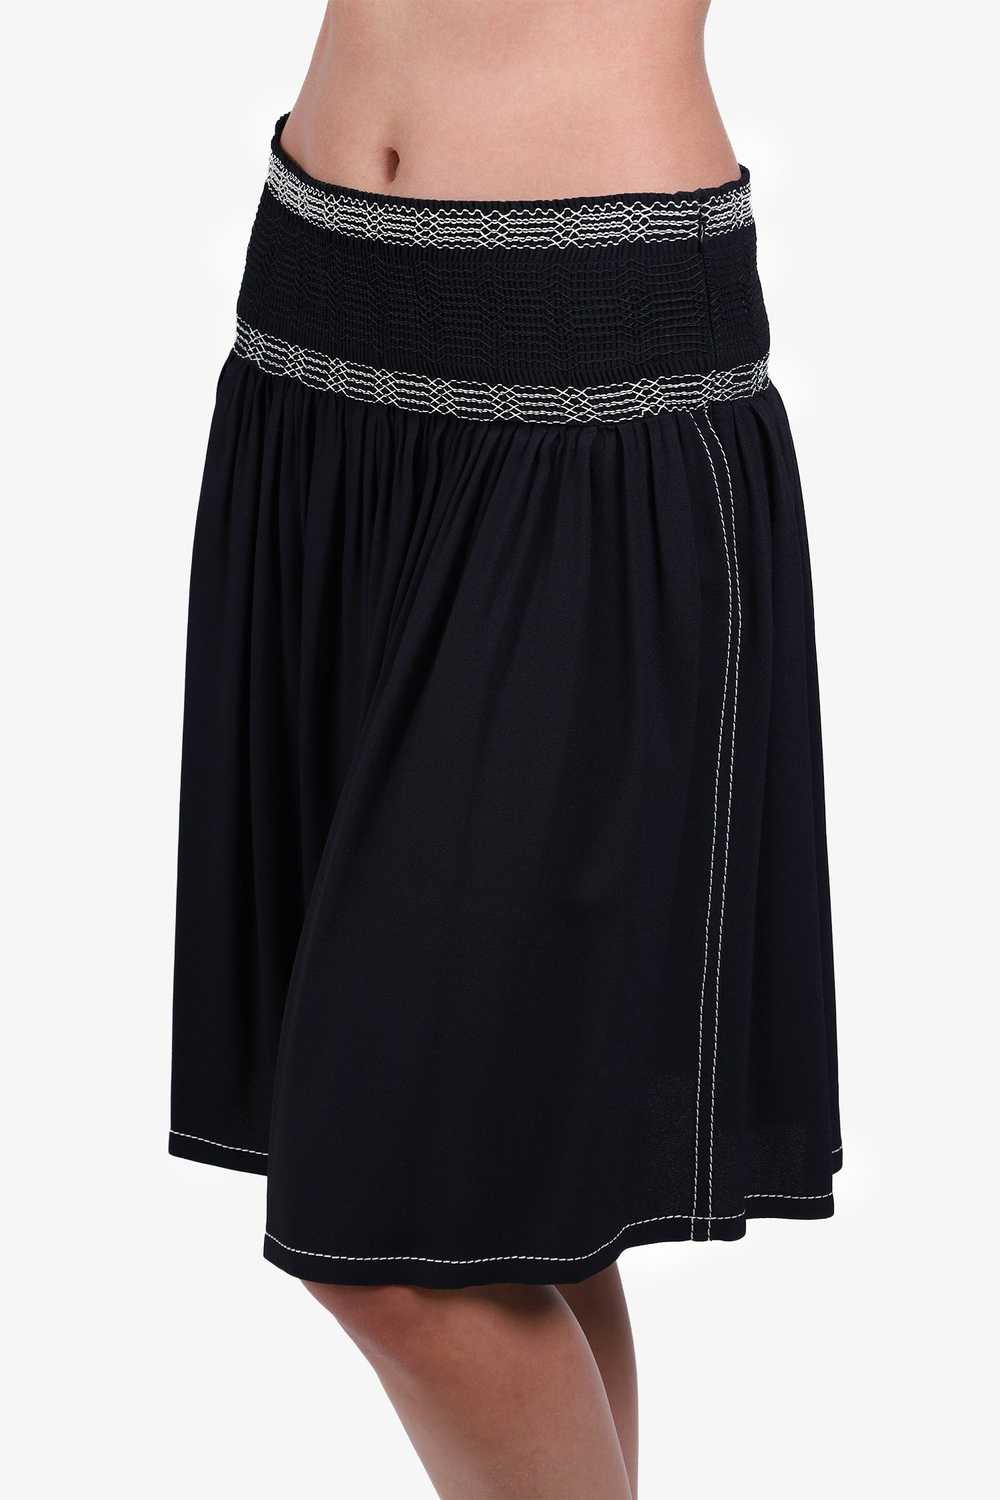 Prada Black Pleated Midi Skirt Size 36 - image 3